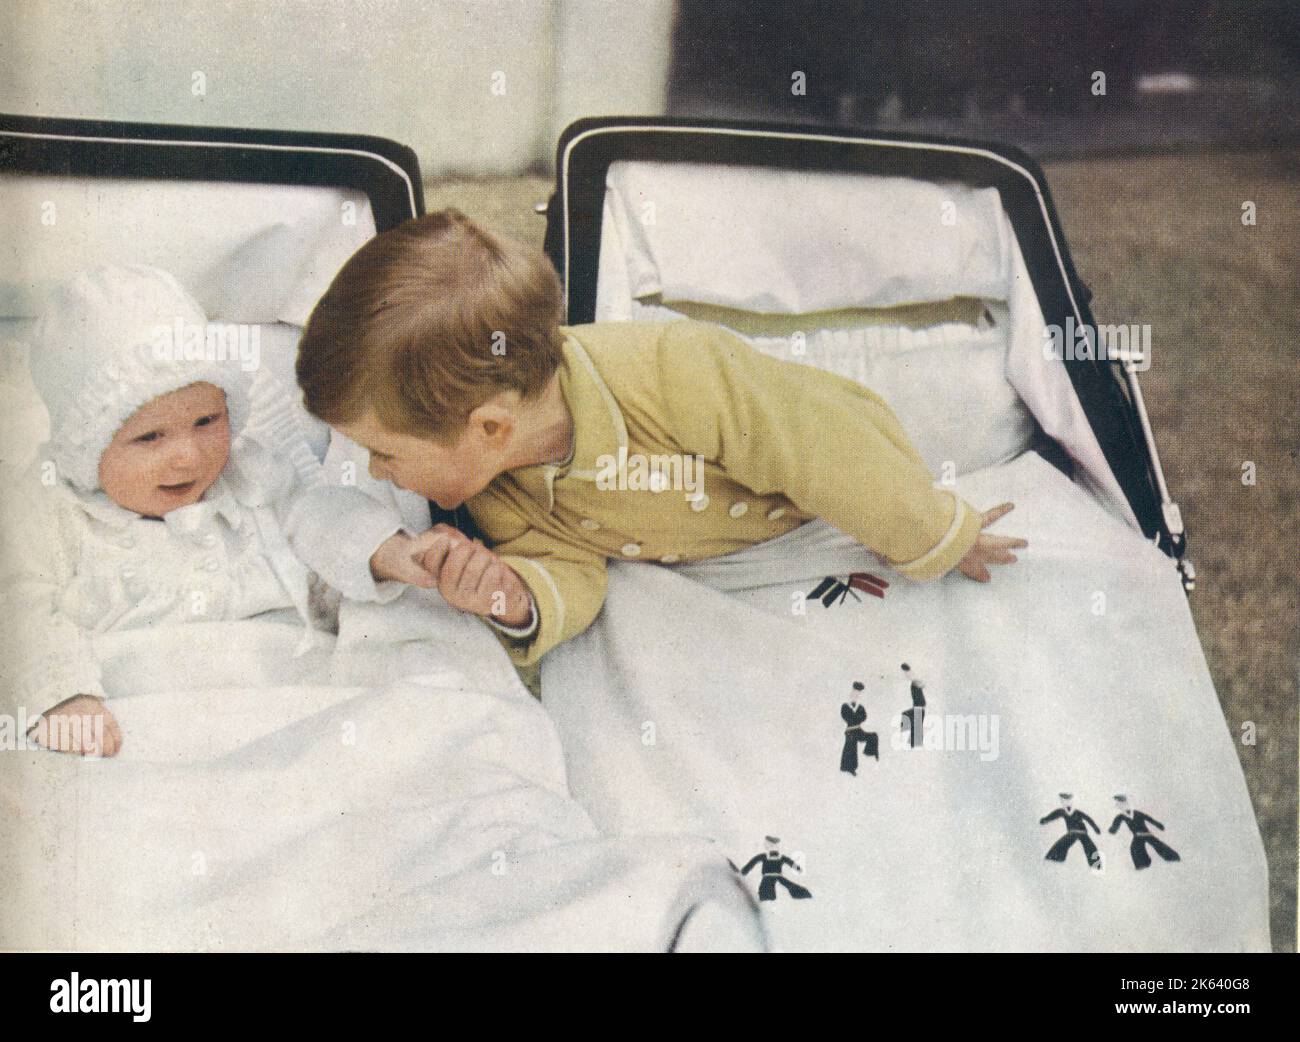 Prinz Charles lehnt sich über seinen Kinderwagen, um die Hand seiner kleinen Schwester Prinzessin Anne zu nehmen. Stockfoto